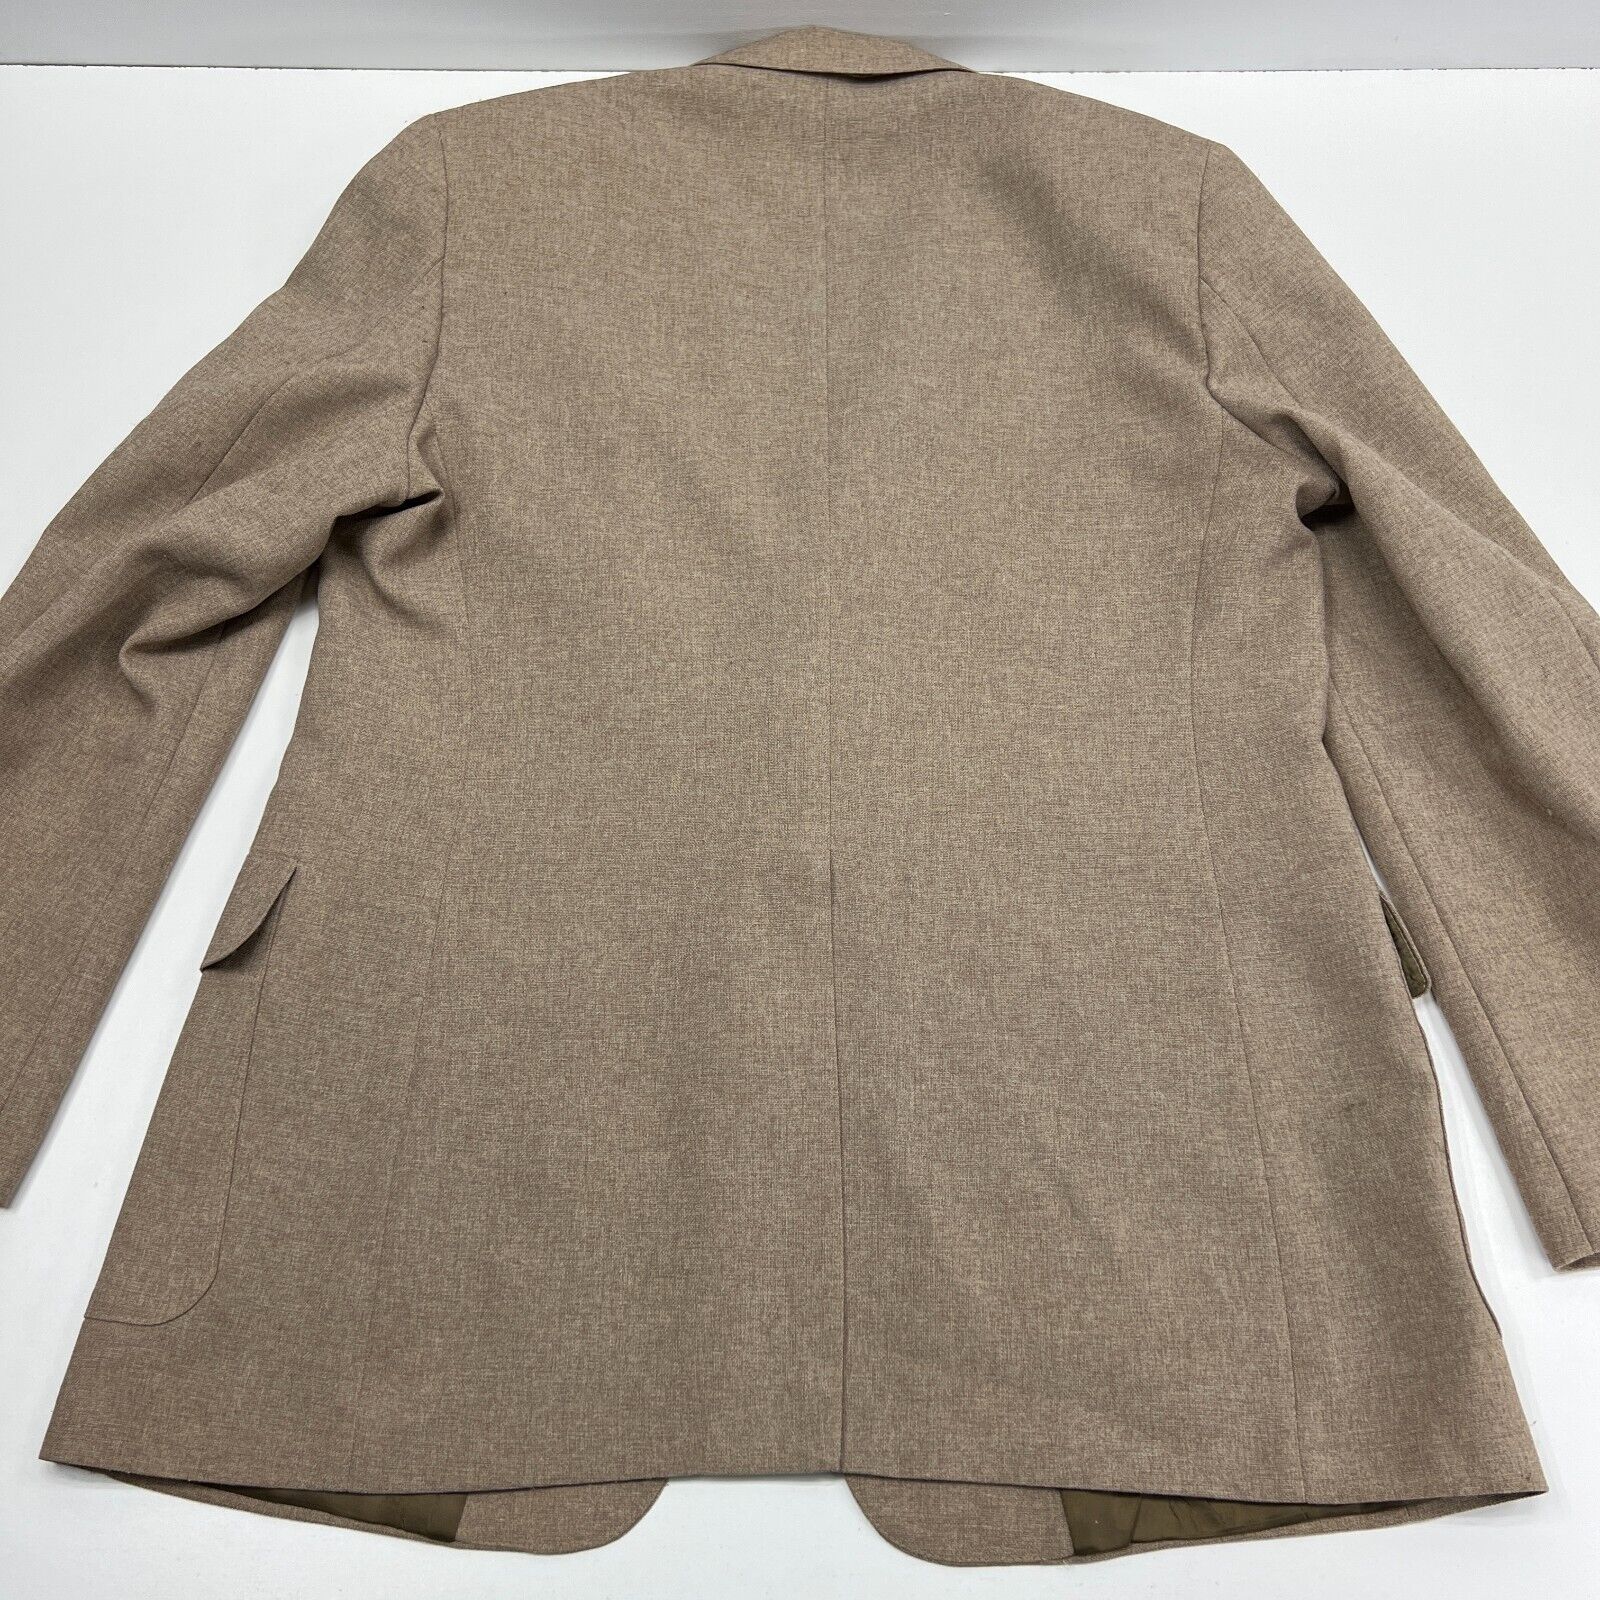 Vintage Levi's Action Suit Jacket Men's 46 Long (46L) Tan Beige Sport Coat